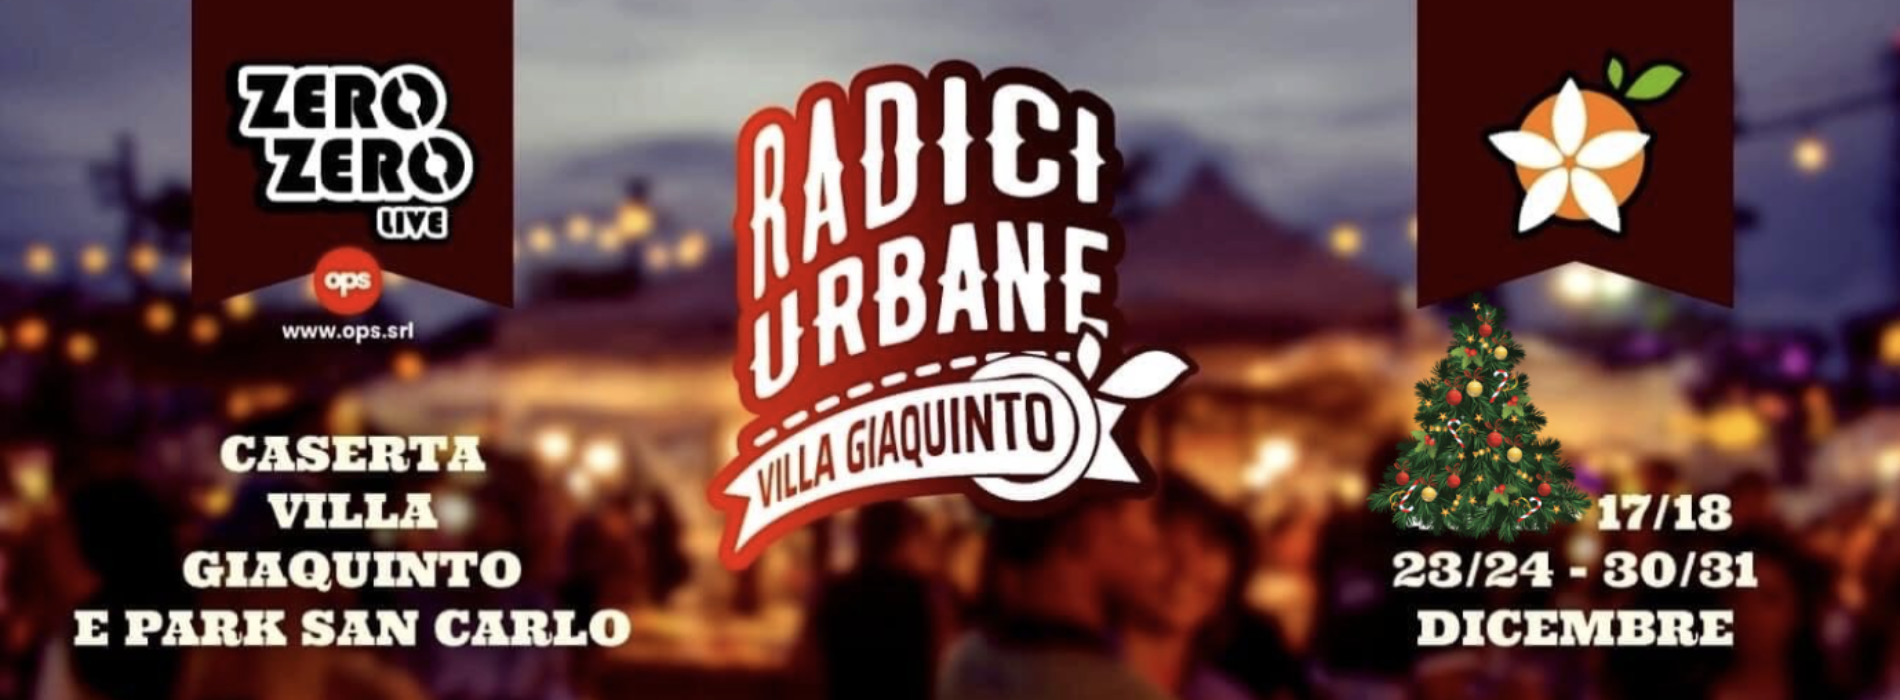 Radici Urbane, a Caserta il festival dei diritti e della cultura